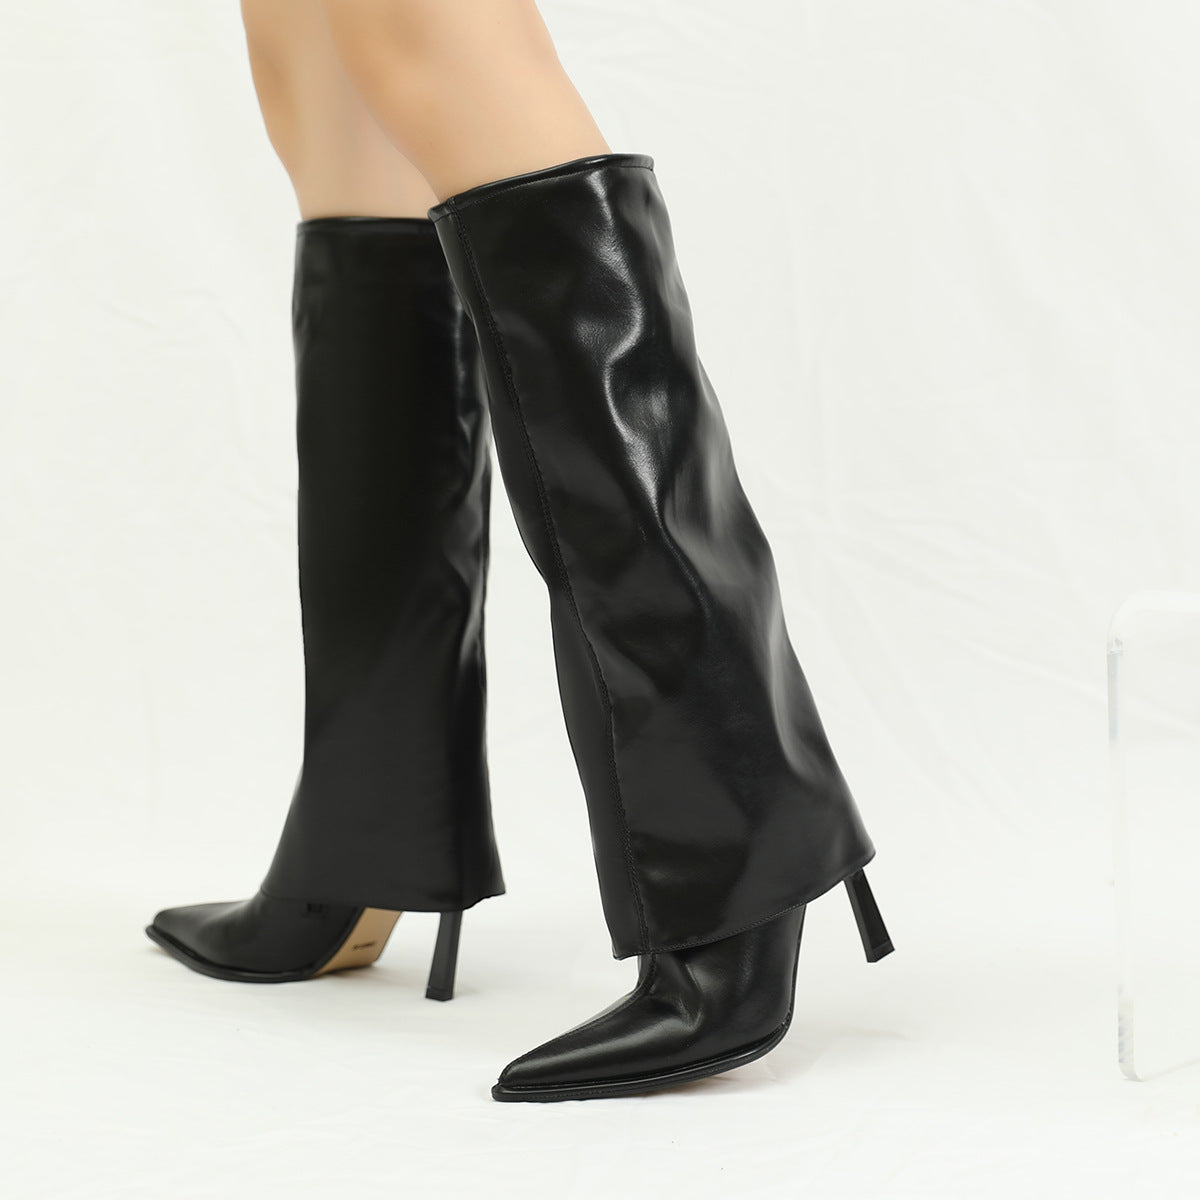 Women's Female British Style Stiletto Pointed Heels